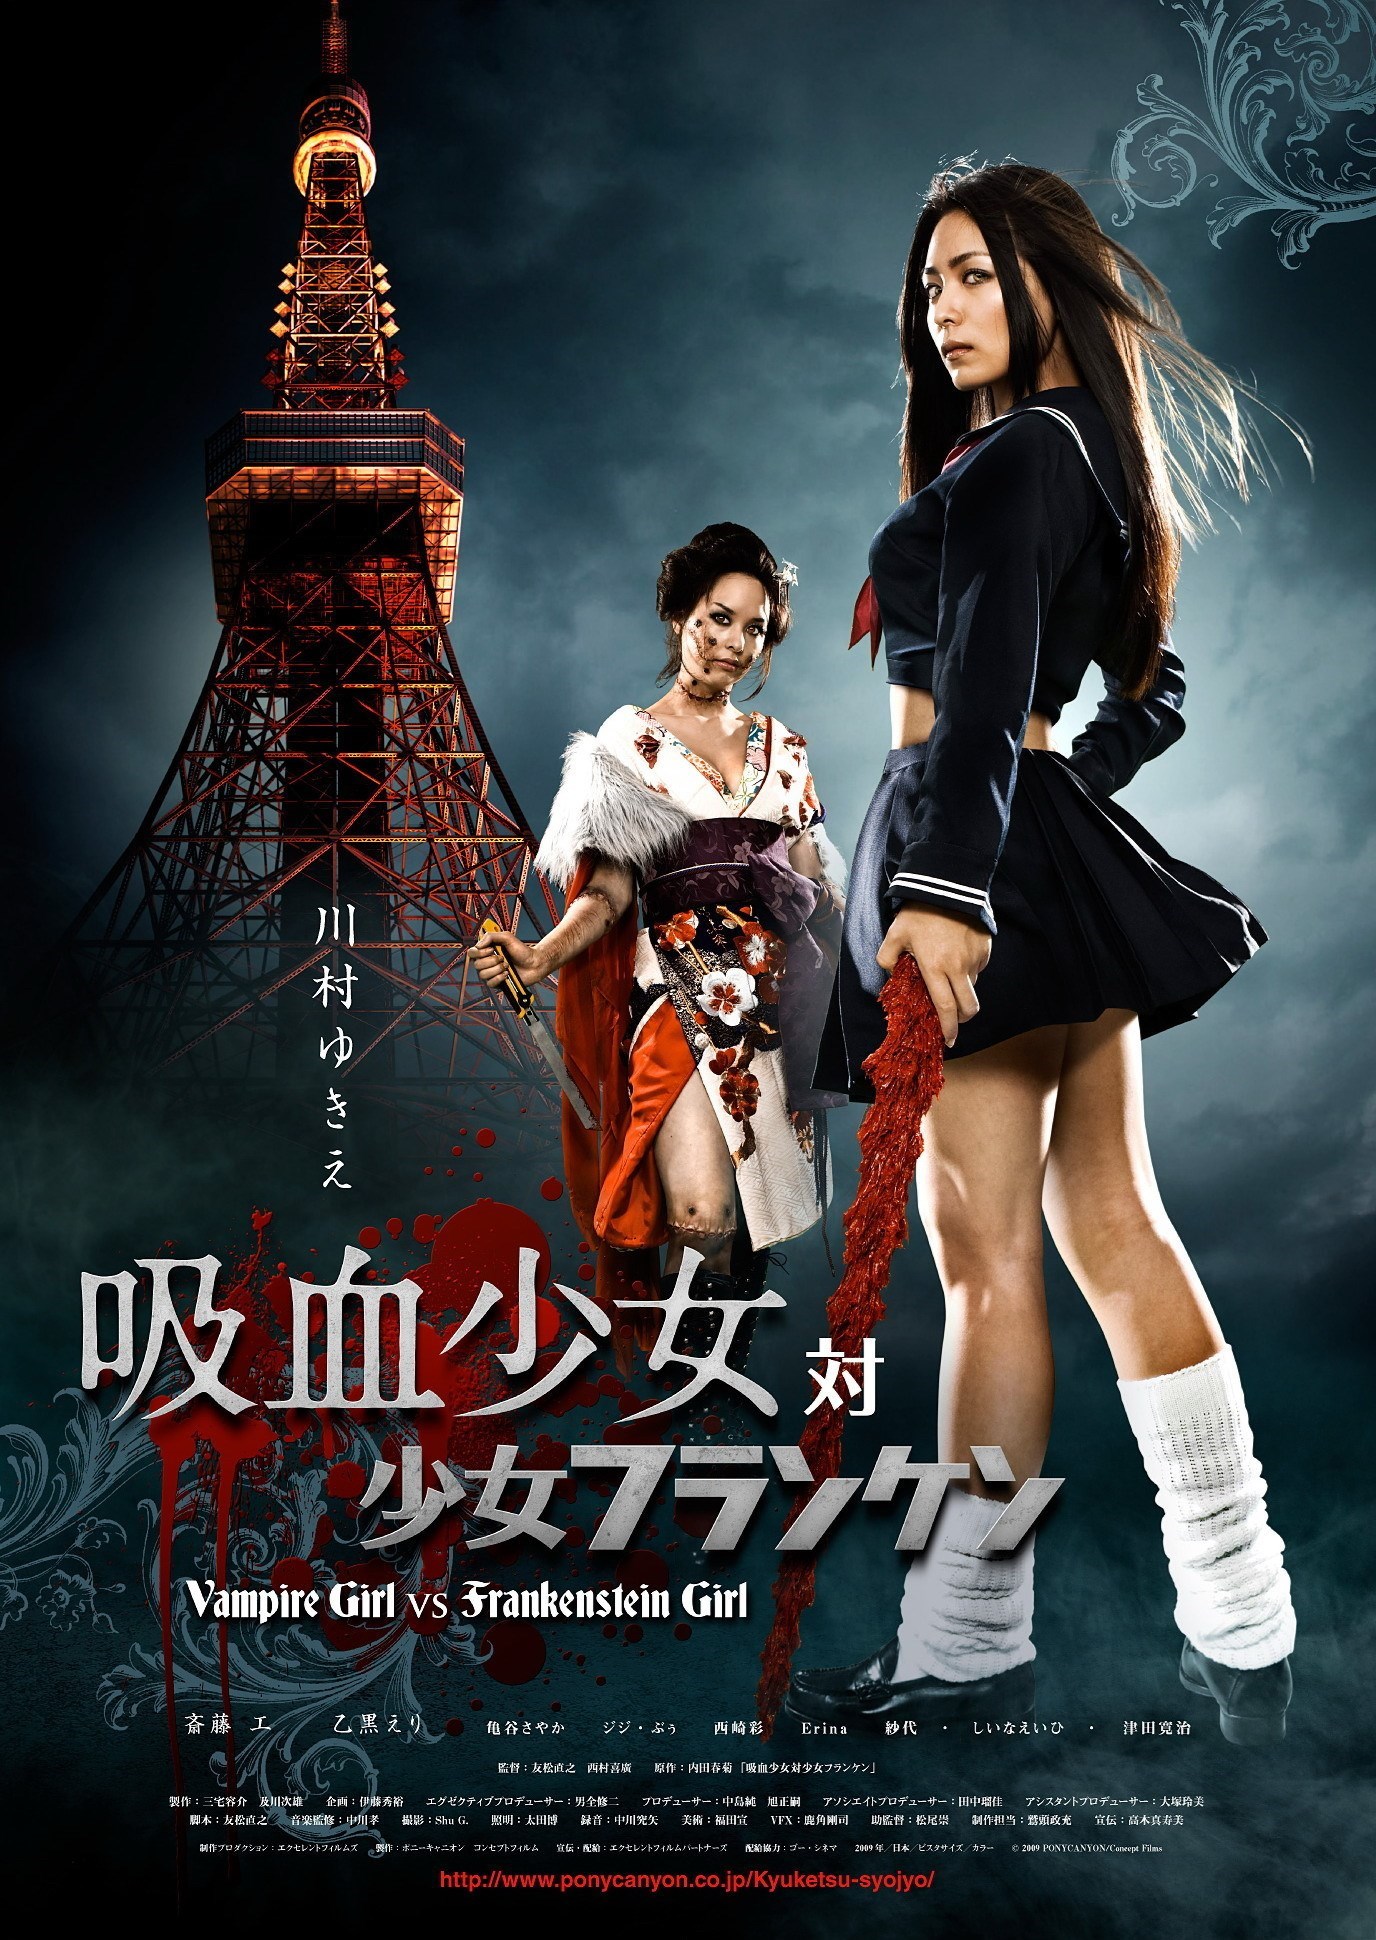 Vampire Girl vs. Frankenstein Girl (2009) with English Subtitles on DVD on DVD